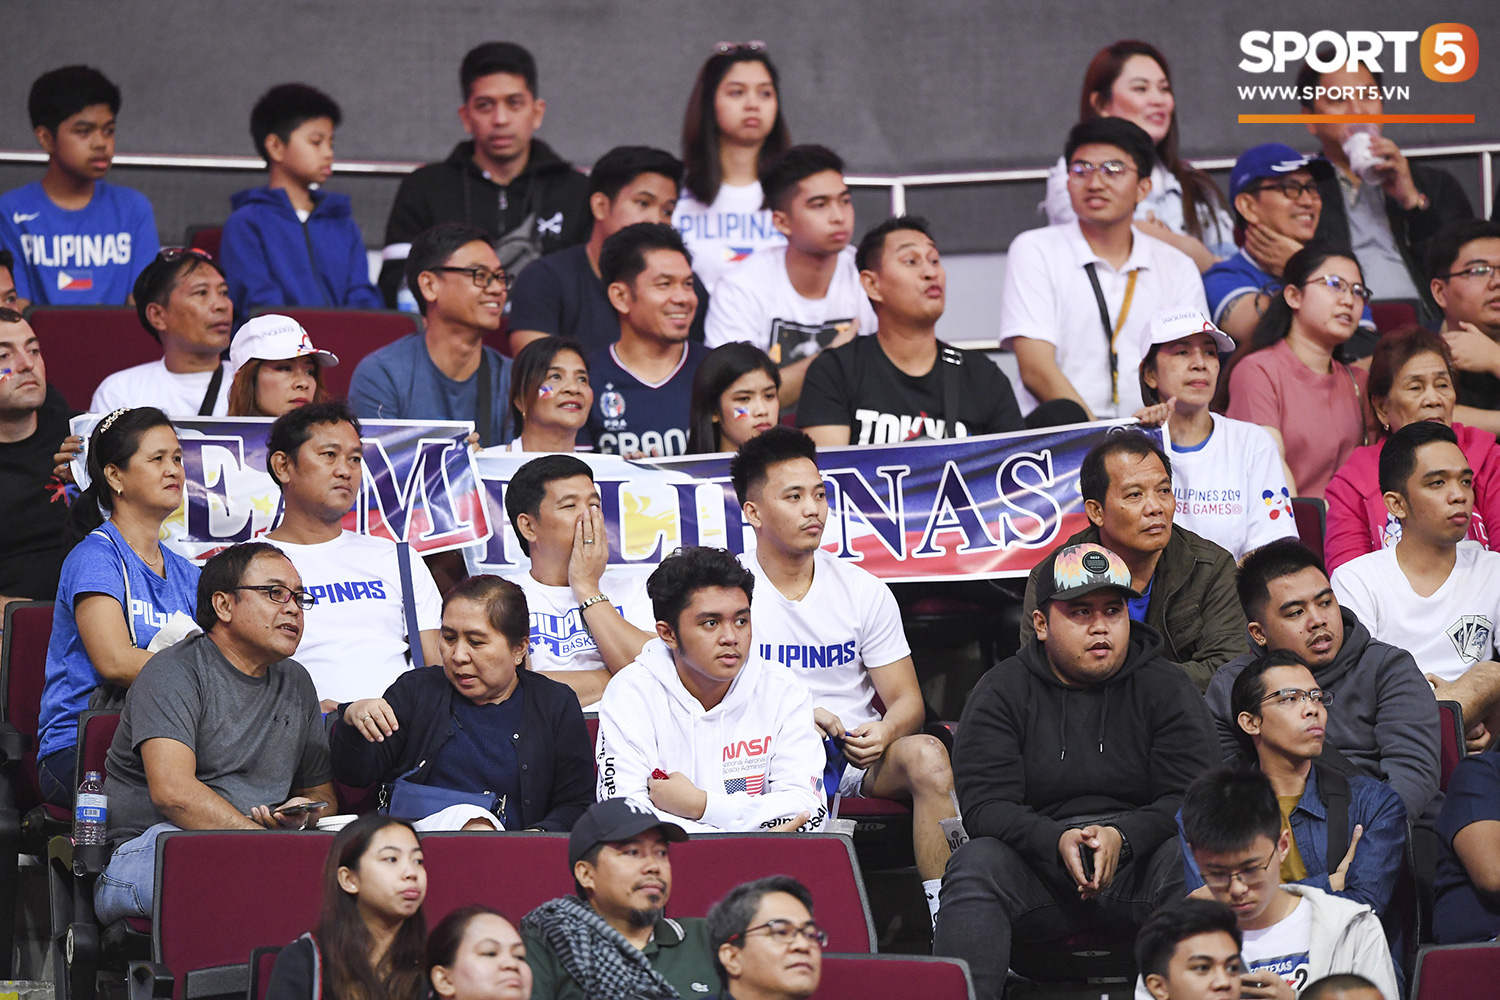 Choáng ngợp trước vẻ hào nhoáng của nhà thi đấu và sức ép từ 15.000 CĐV chủ nhà Philippines mà tuyển bóng rổ Việt Nam phải đối mặt - Ảnh 2.